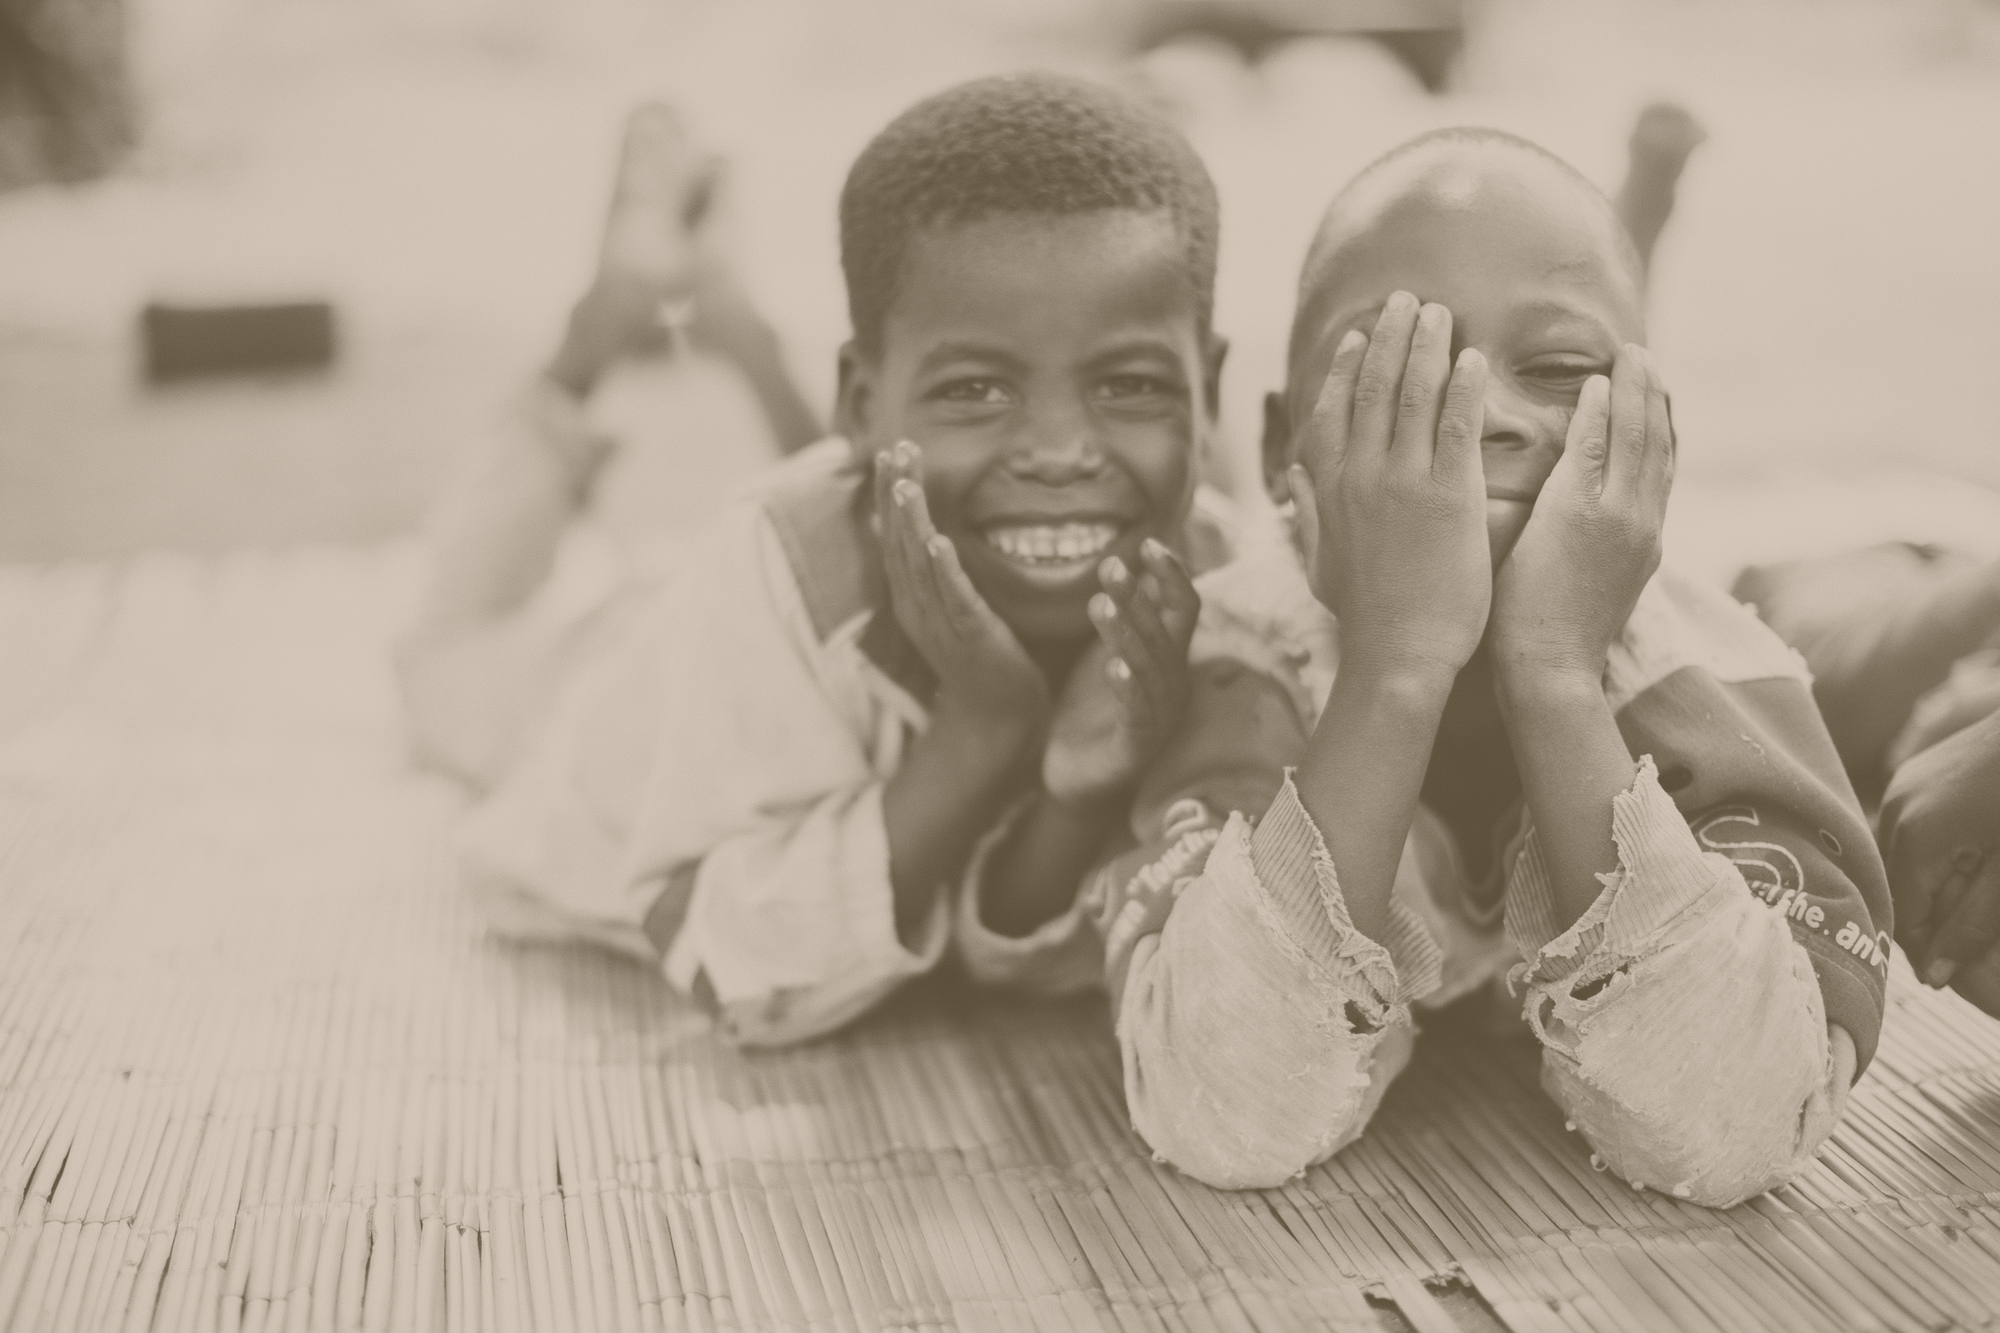 Smiling children laugh together.